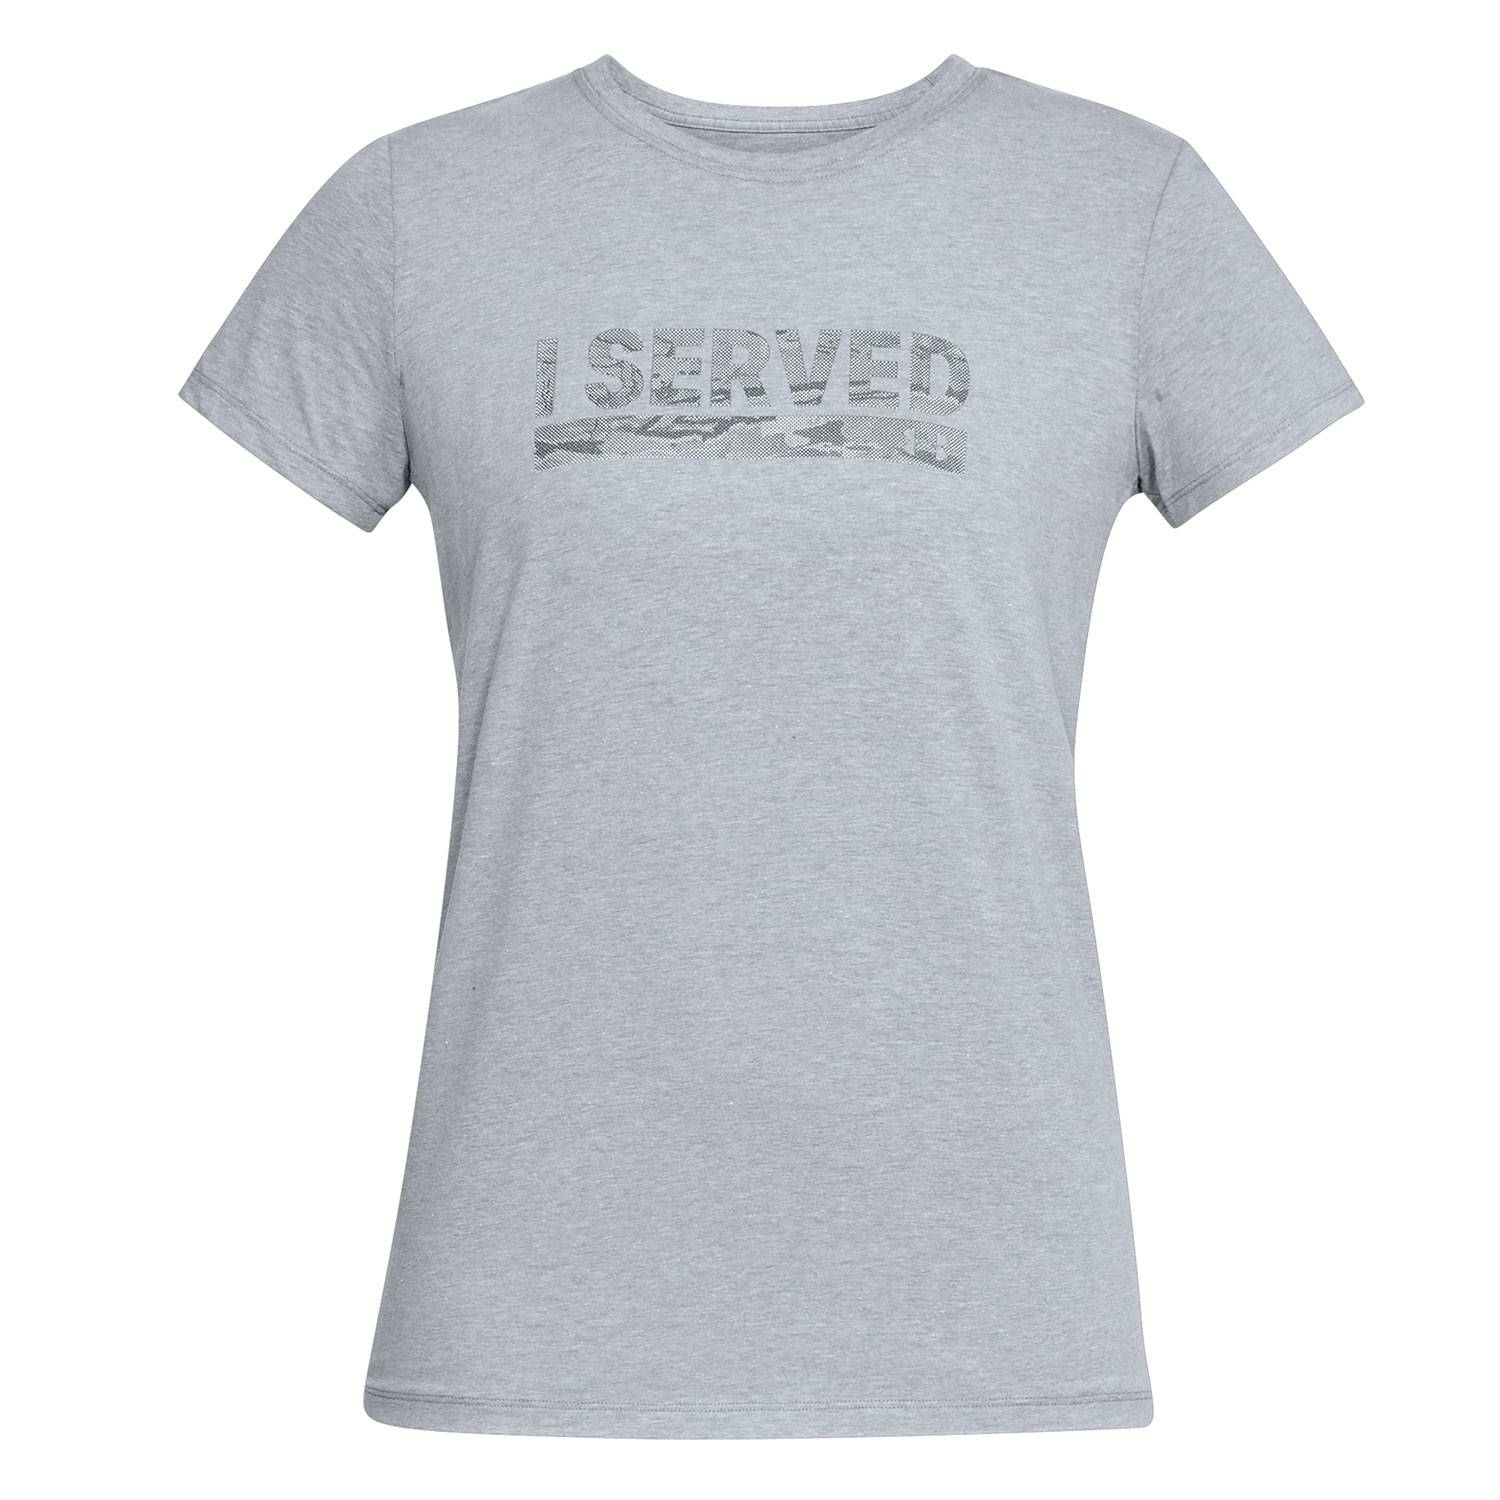 Under Armour Womens Freedom I Served Graphic T-Shirt